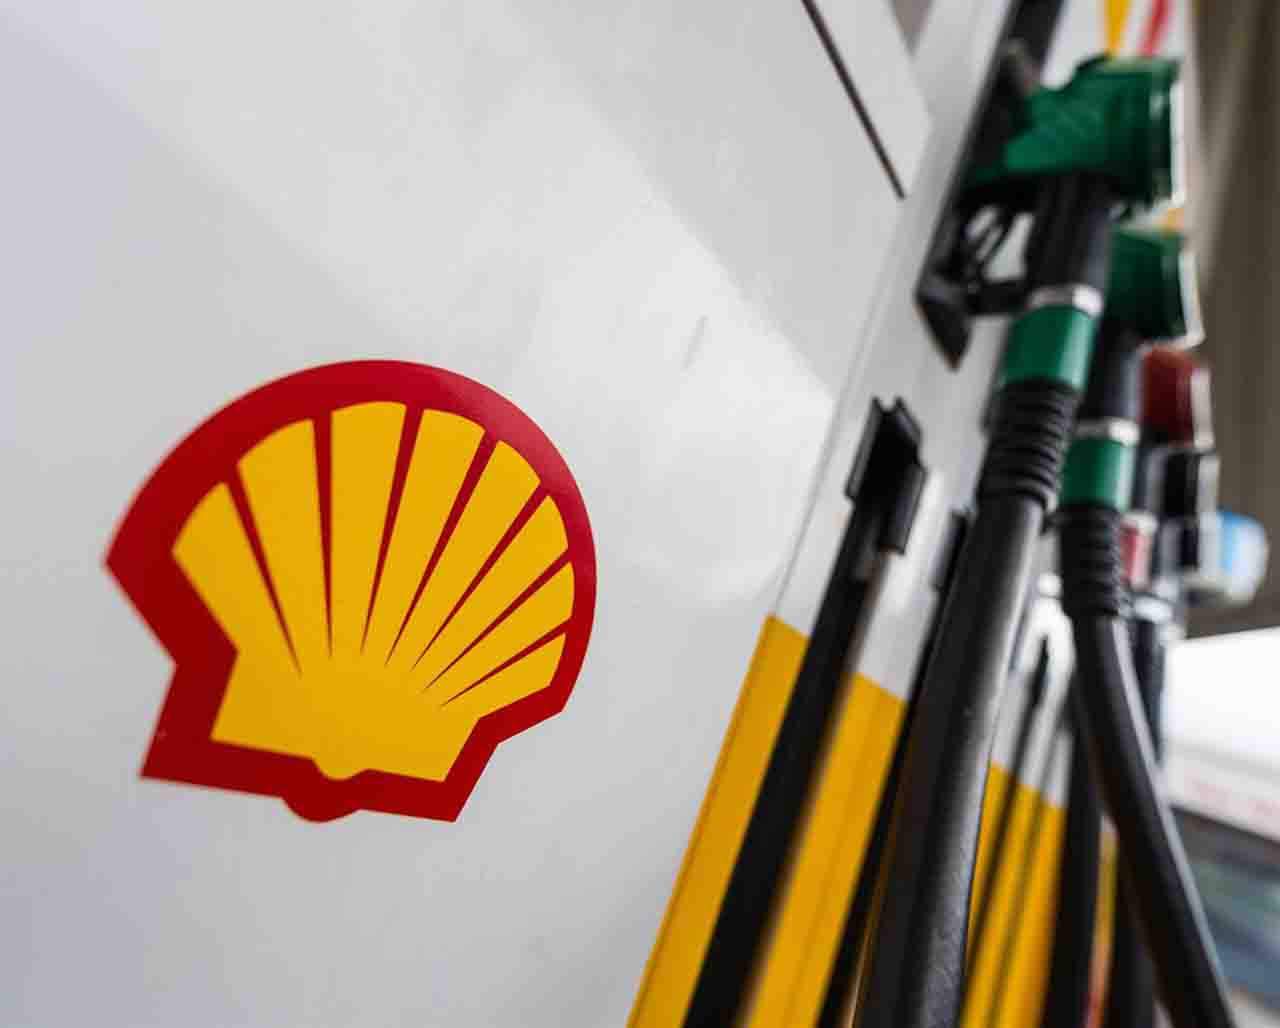 El logo de la compañía de petróleo y gas Royal Dutch Shell en un surtidor de una gasolinera / Foto: EP